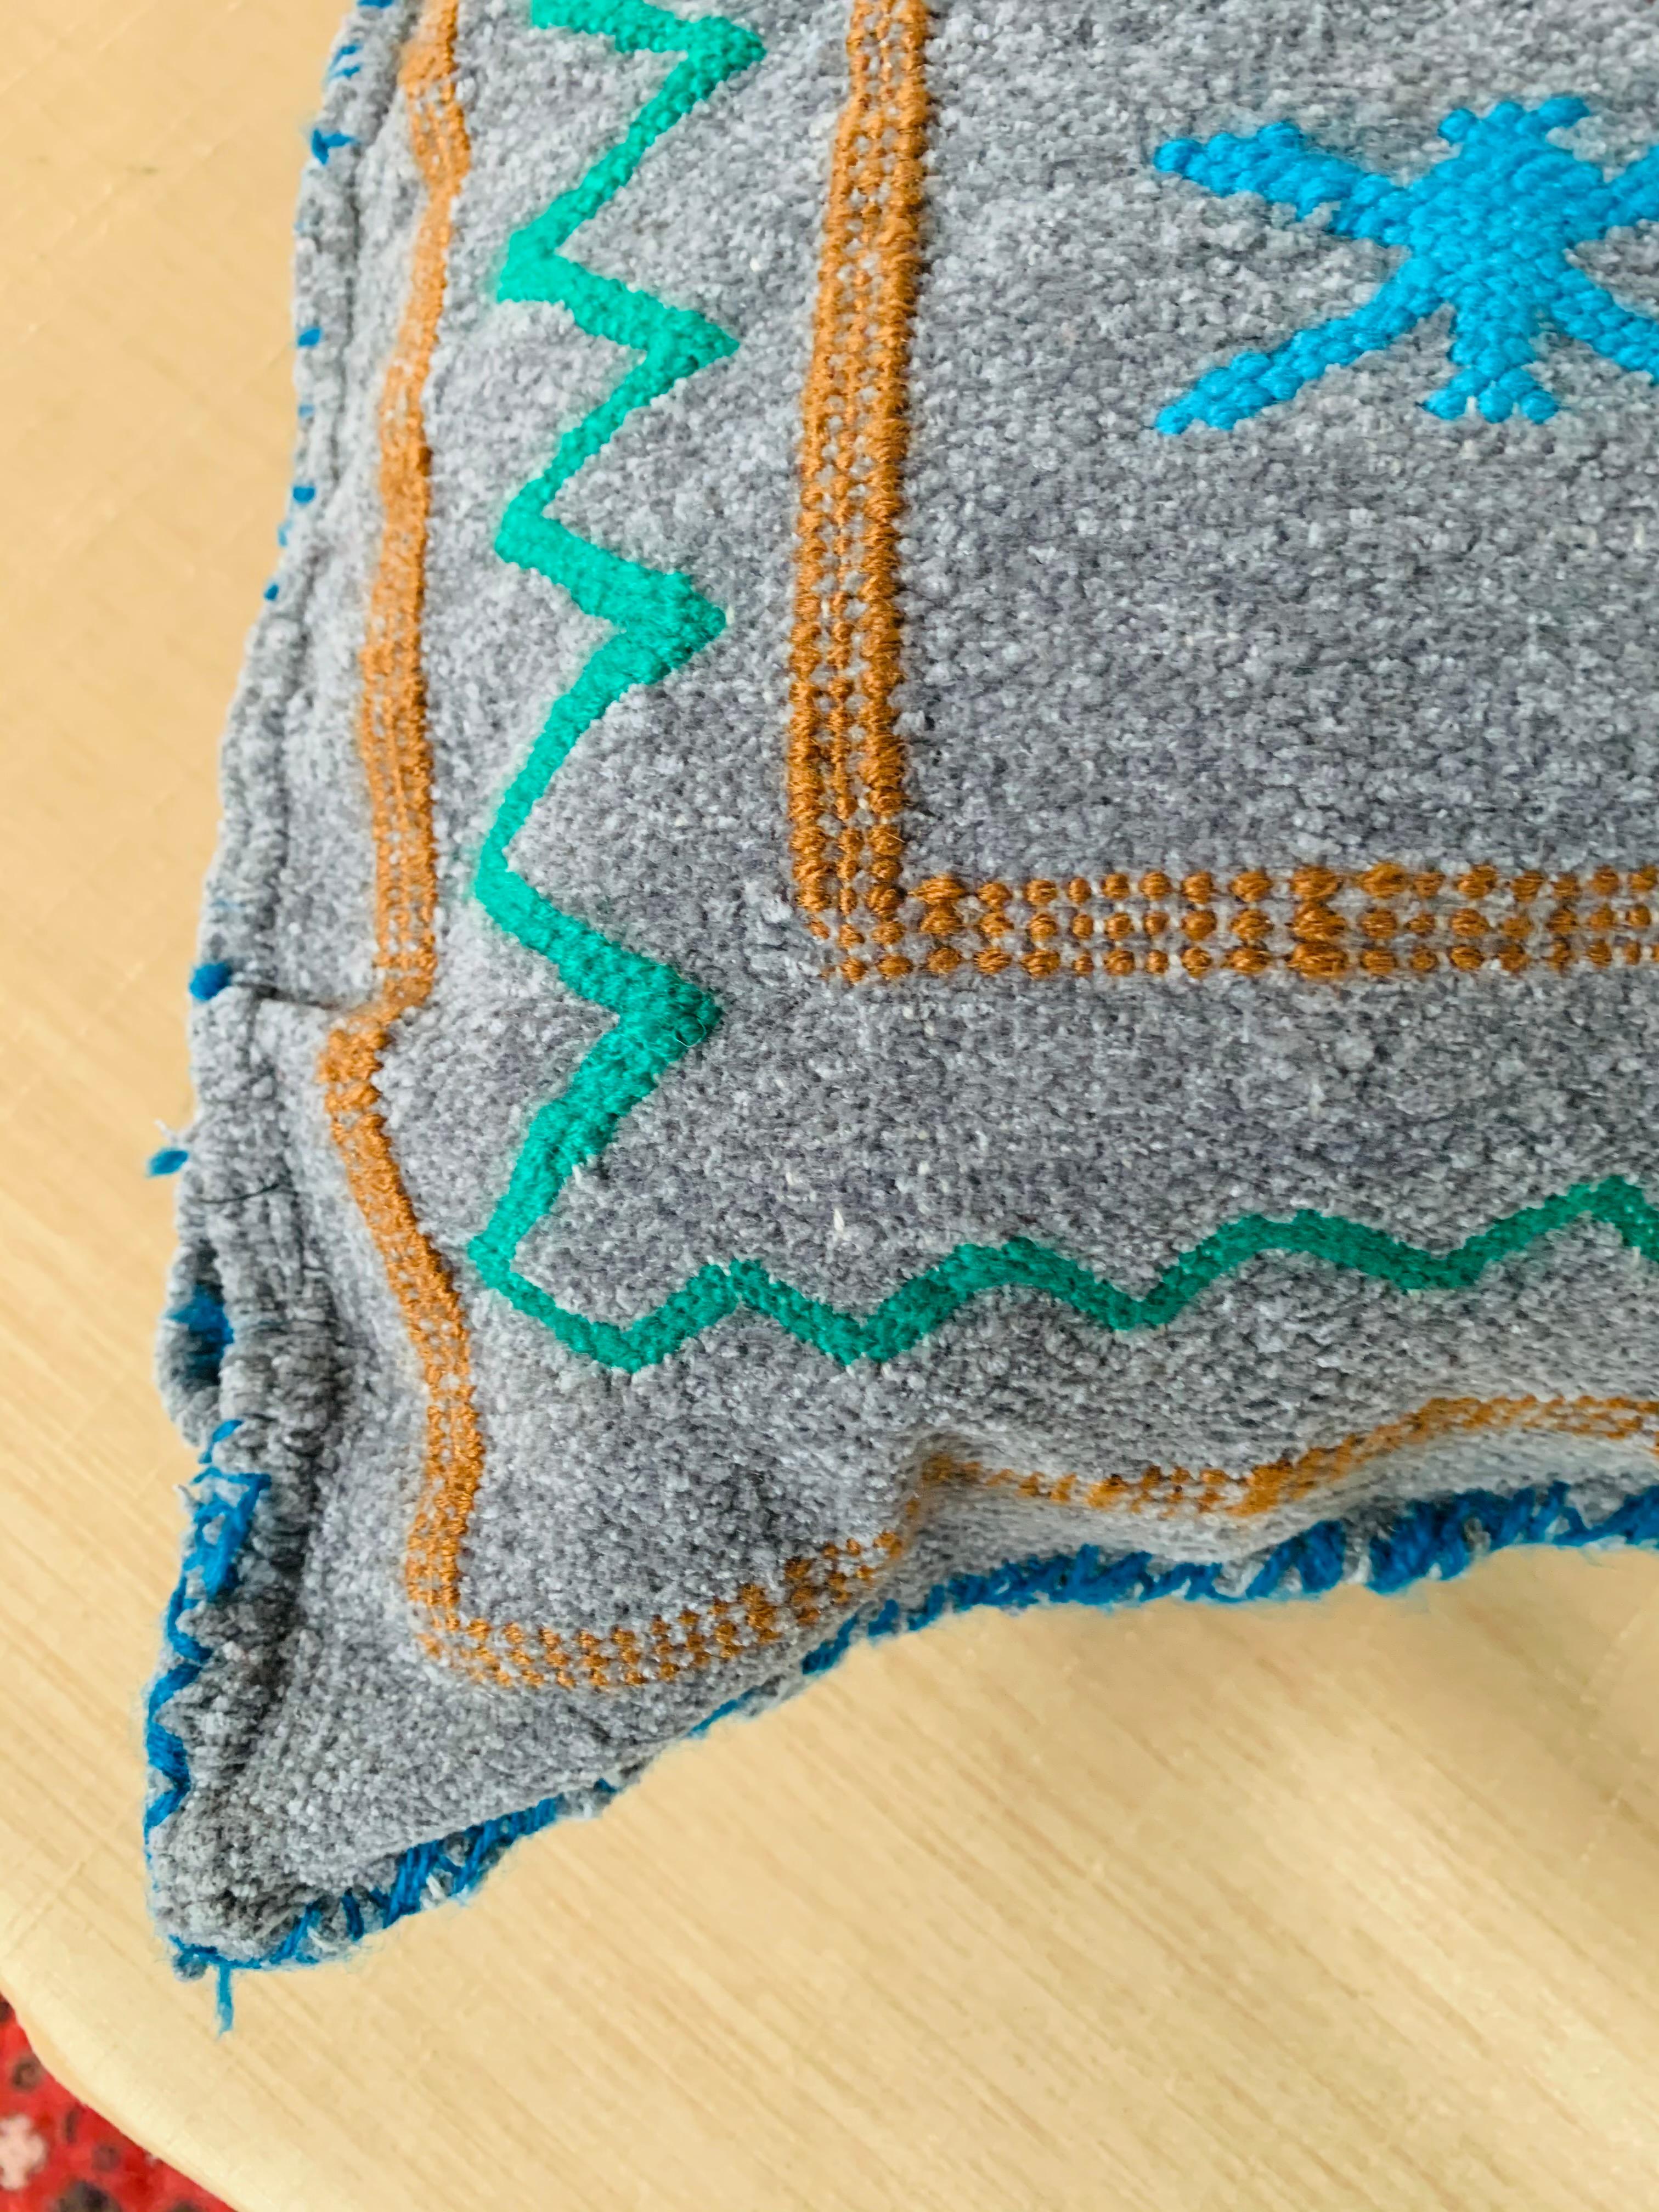 Ein einzigartiges, handgewebtes marokkanisches Kelim-Kissen aus weicher Wolle mit mehrfarbigem Berberstamm-Muster auf grauem/blauem Hintergrund. Es besteht aus einer Mischung aus weicher Schafwolle und natürlichen organischen Farbstoffen.

